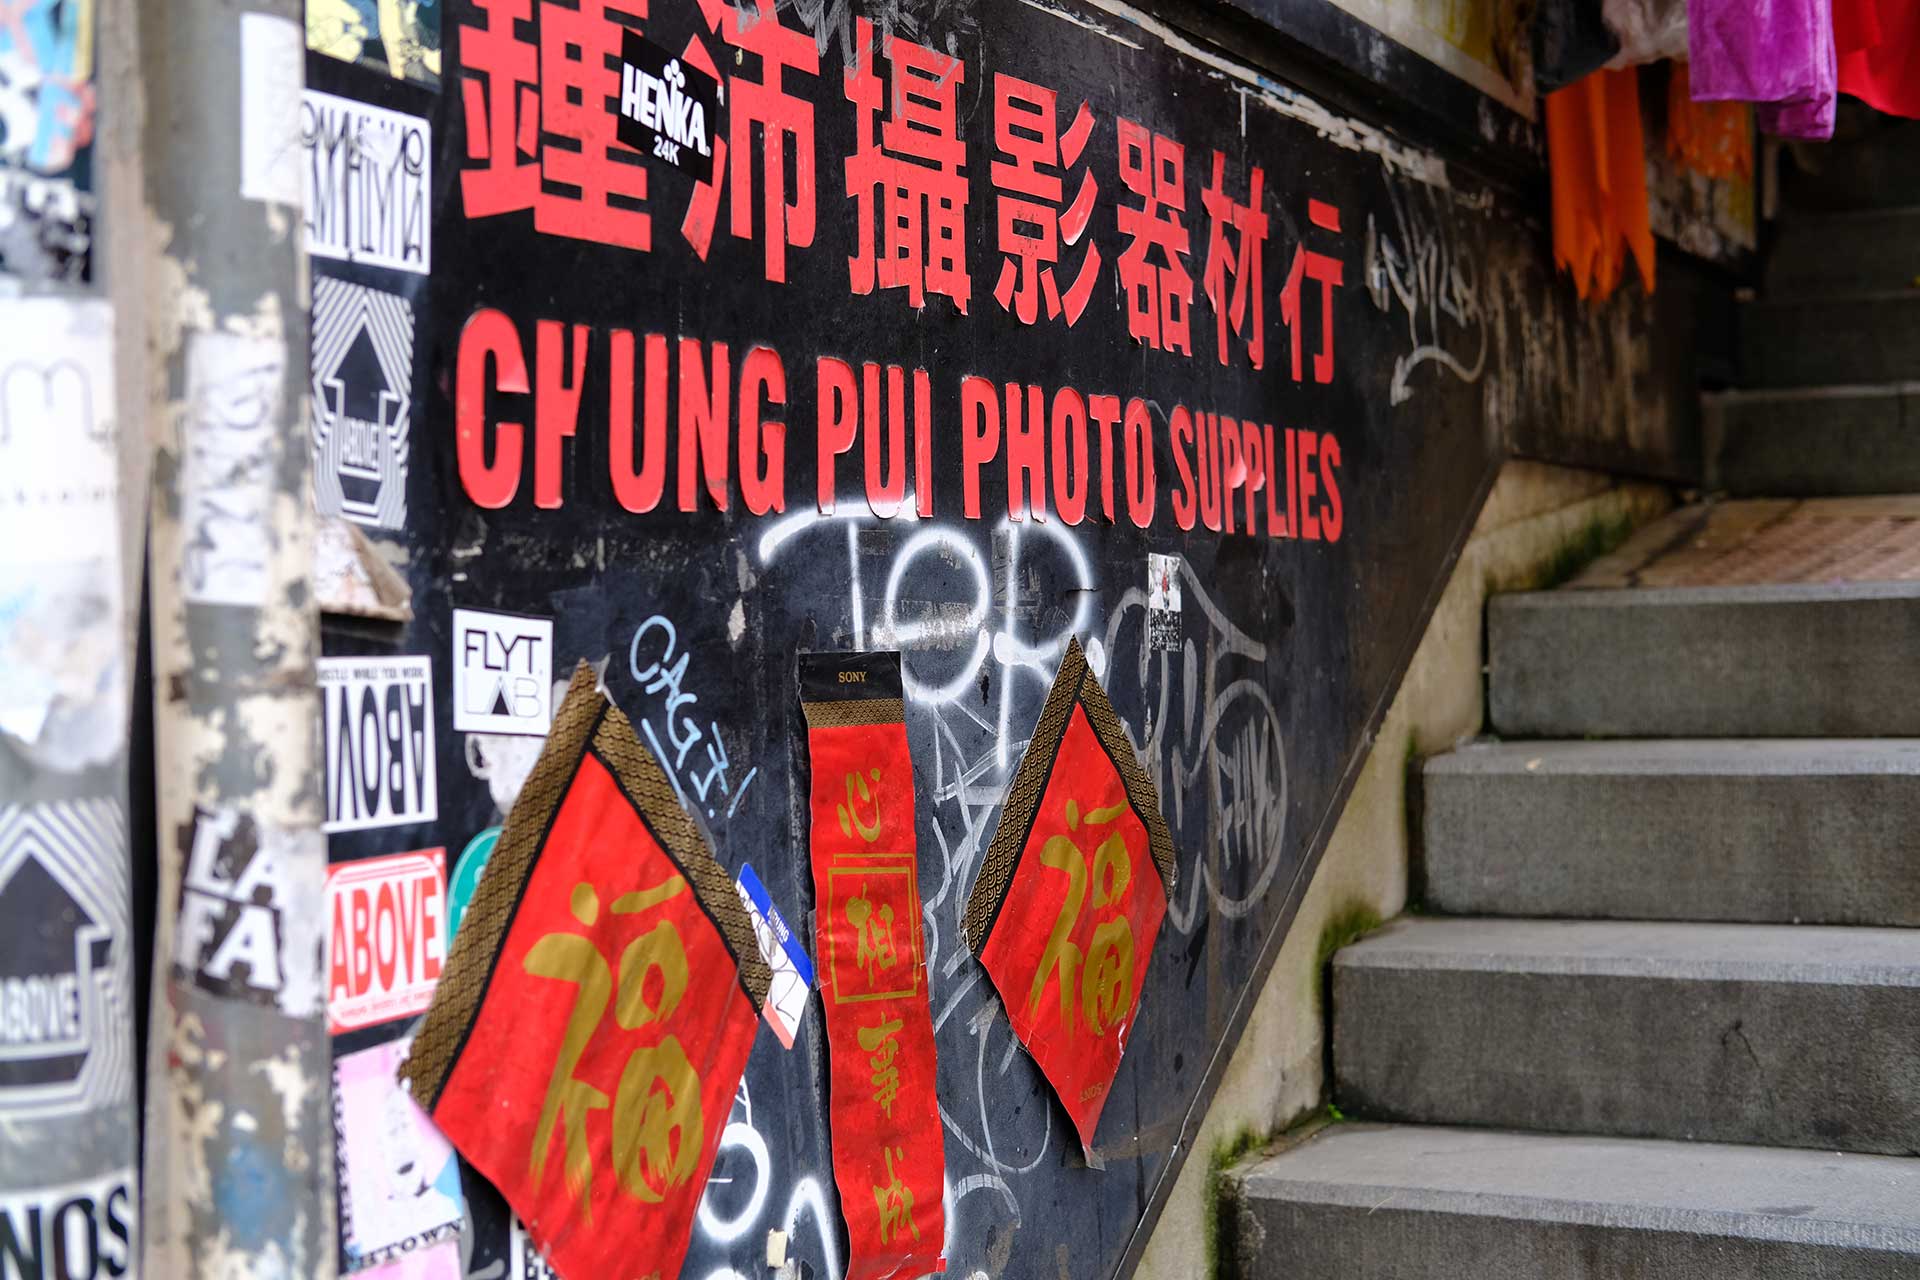 Chung Pui Photo Supplies